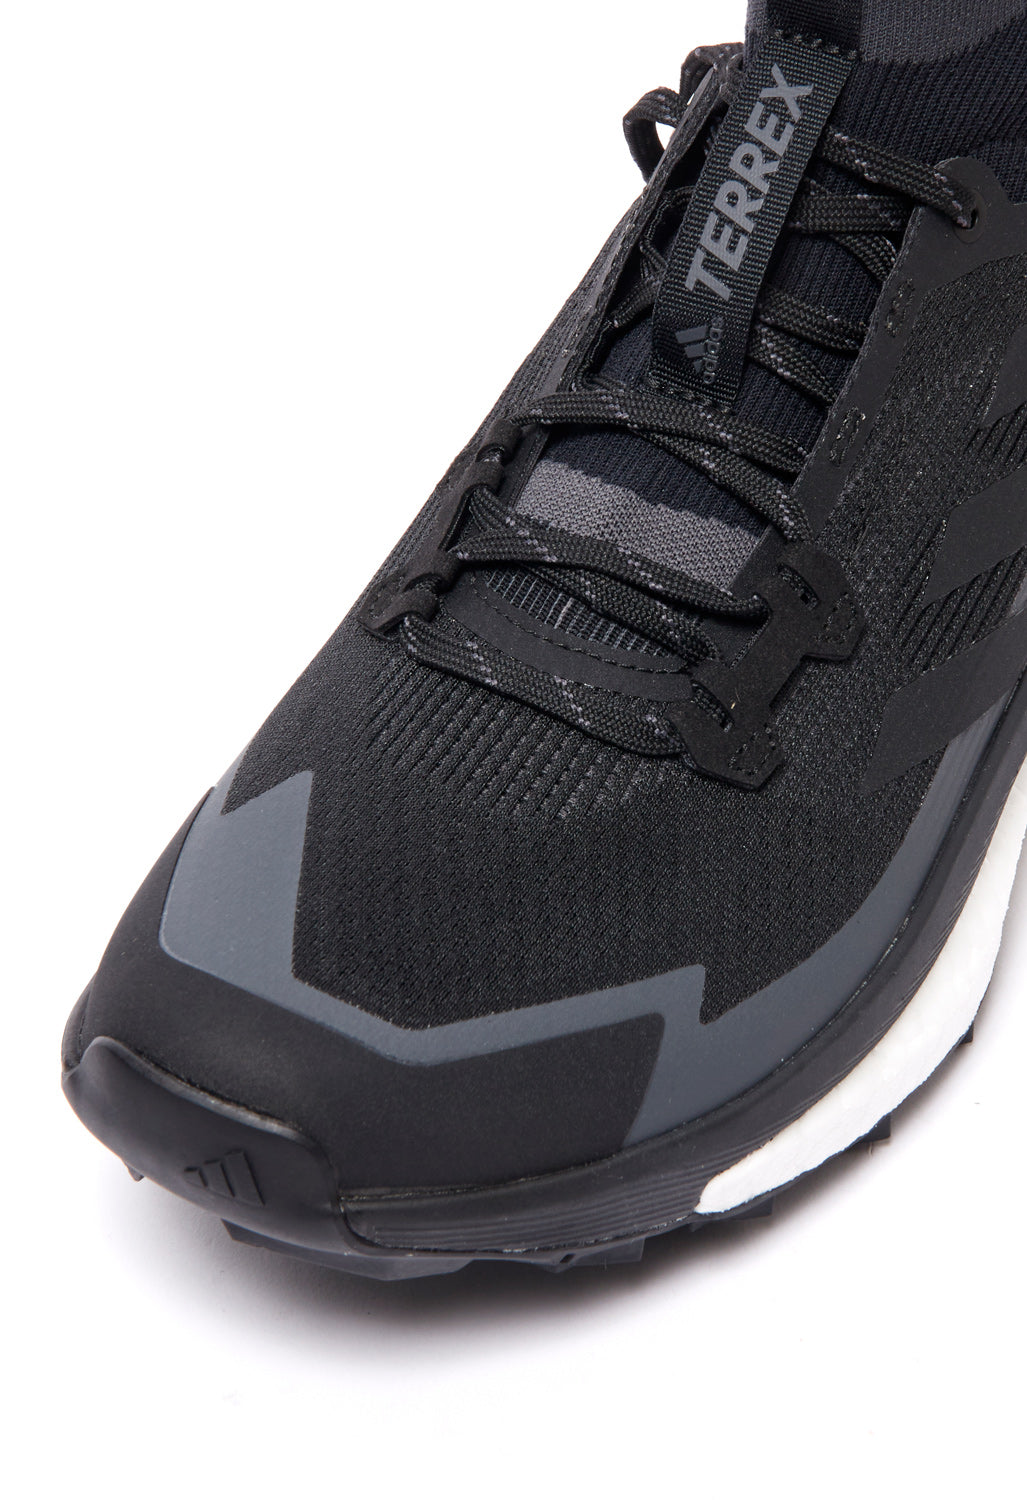 adidas TERREX Free Hiker 2 Men's Boots - Core Black/Grey Six/Carbon